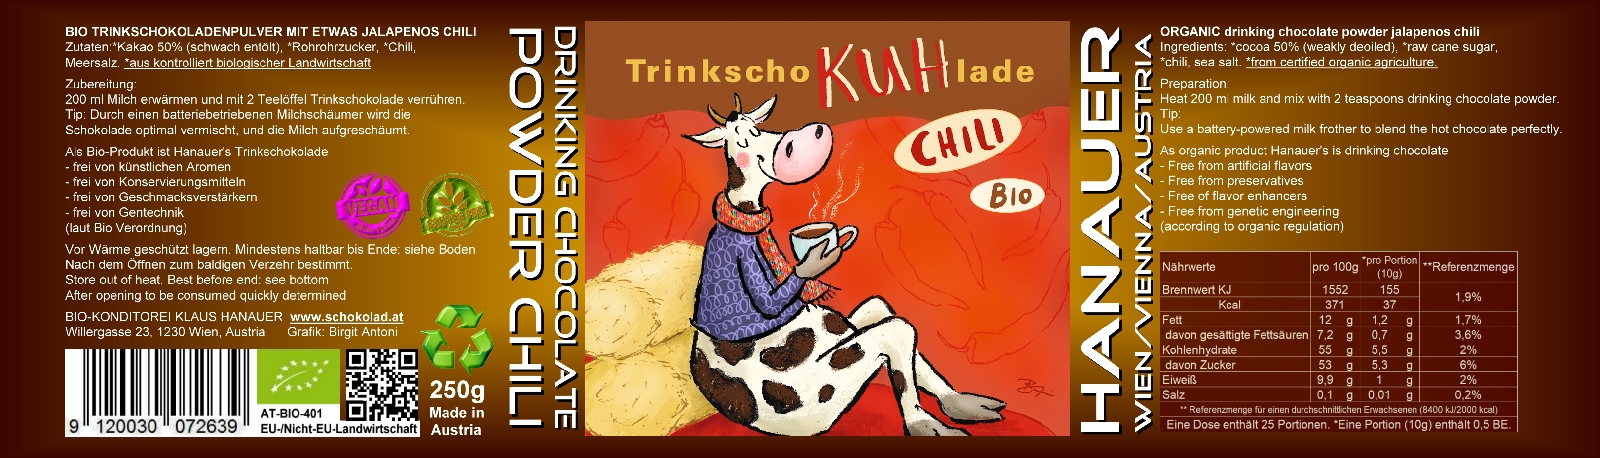 Bio Trink SchoKUHlade Chilli Etikett